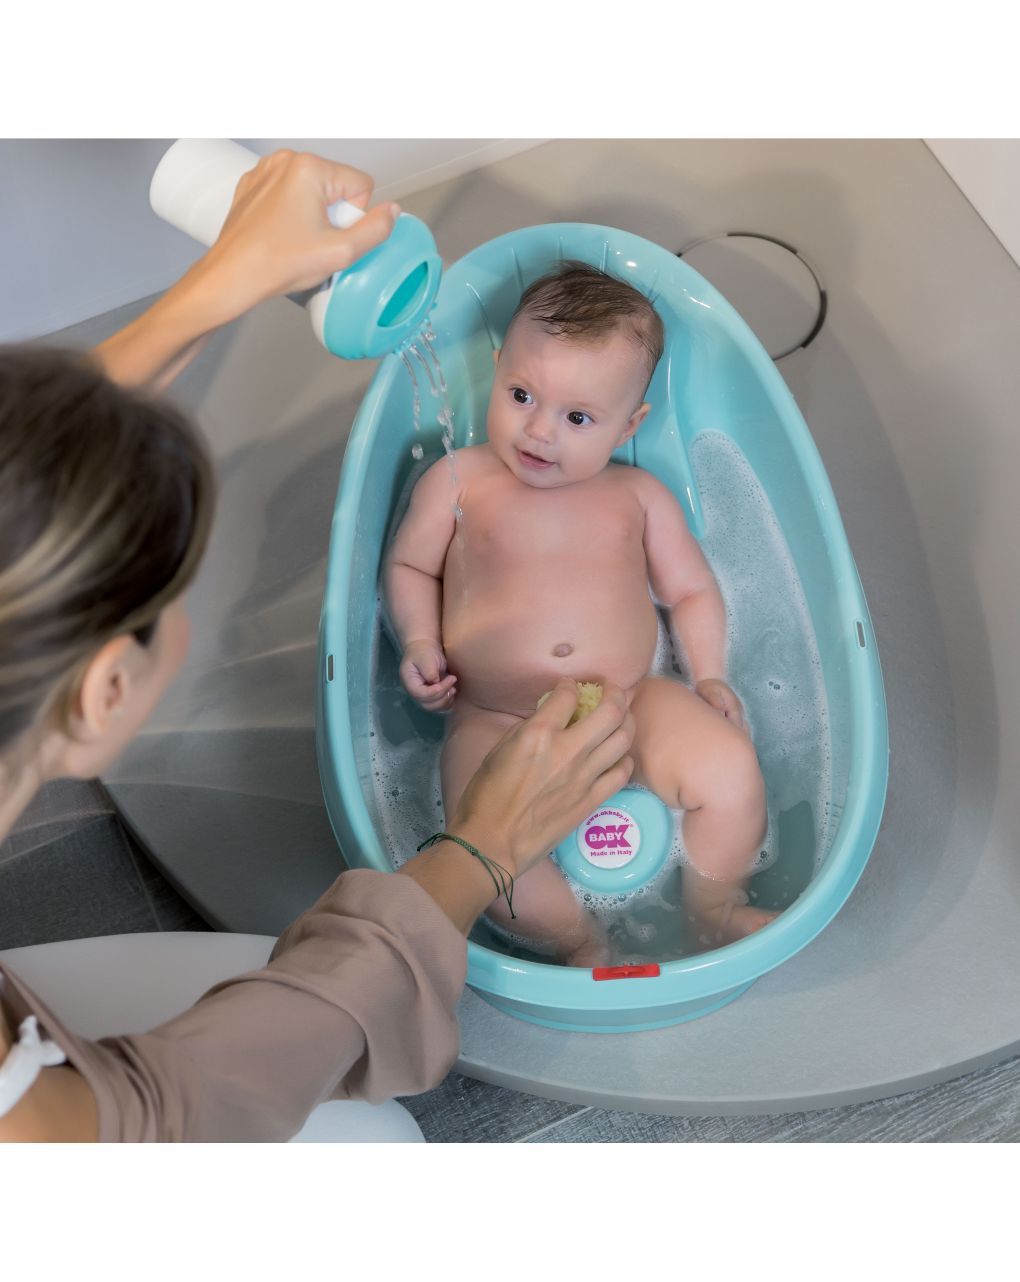 Onda baby banheira de bebé azul claro 0-12 meses - ok baby - Ok Baby